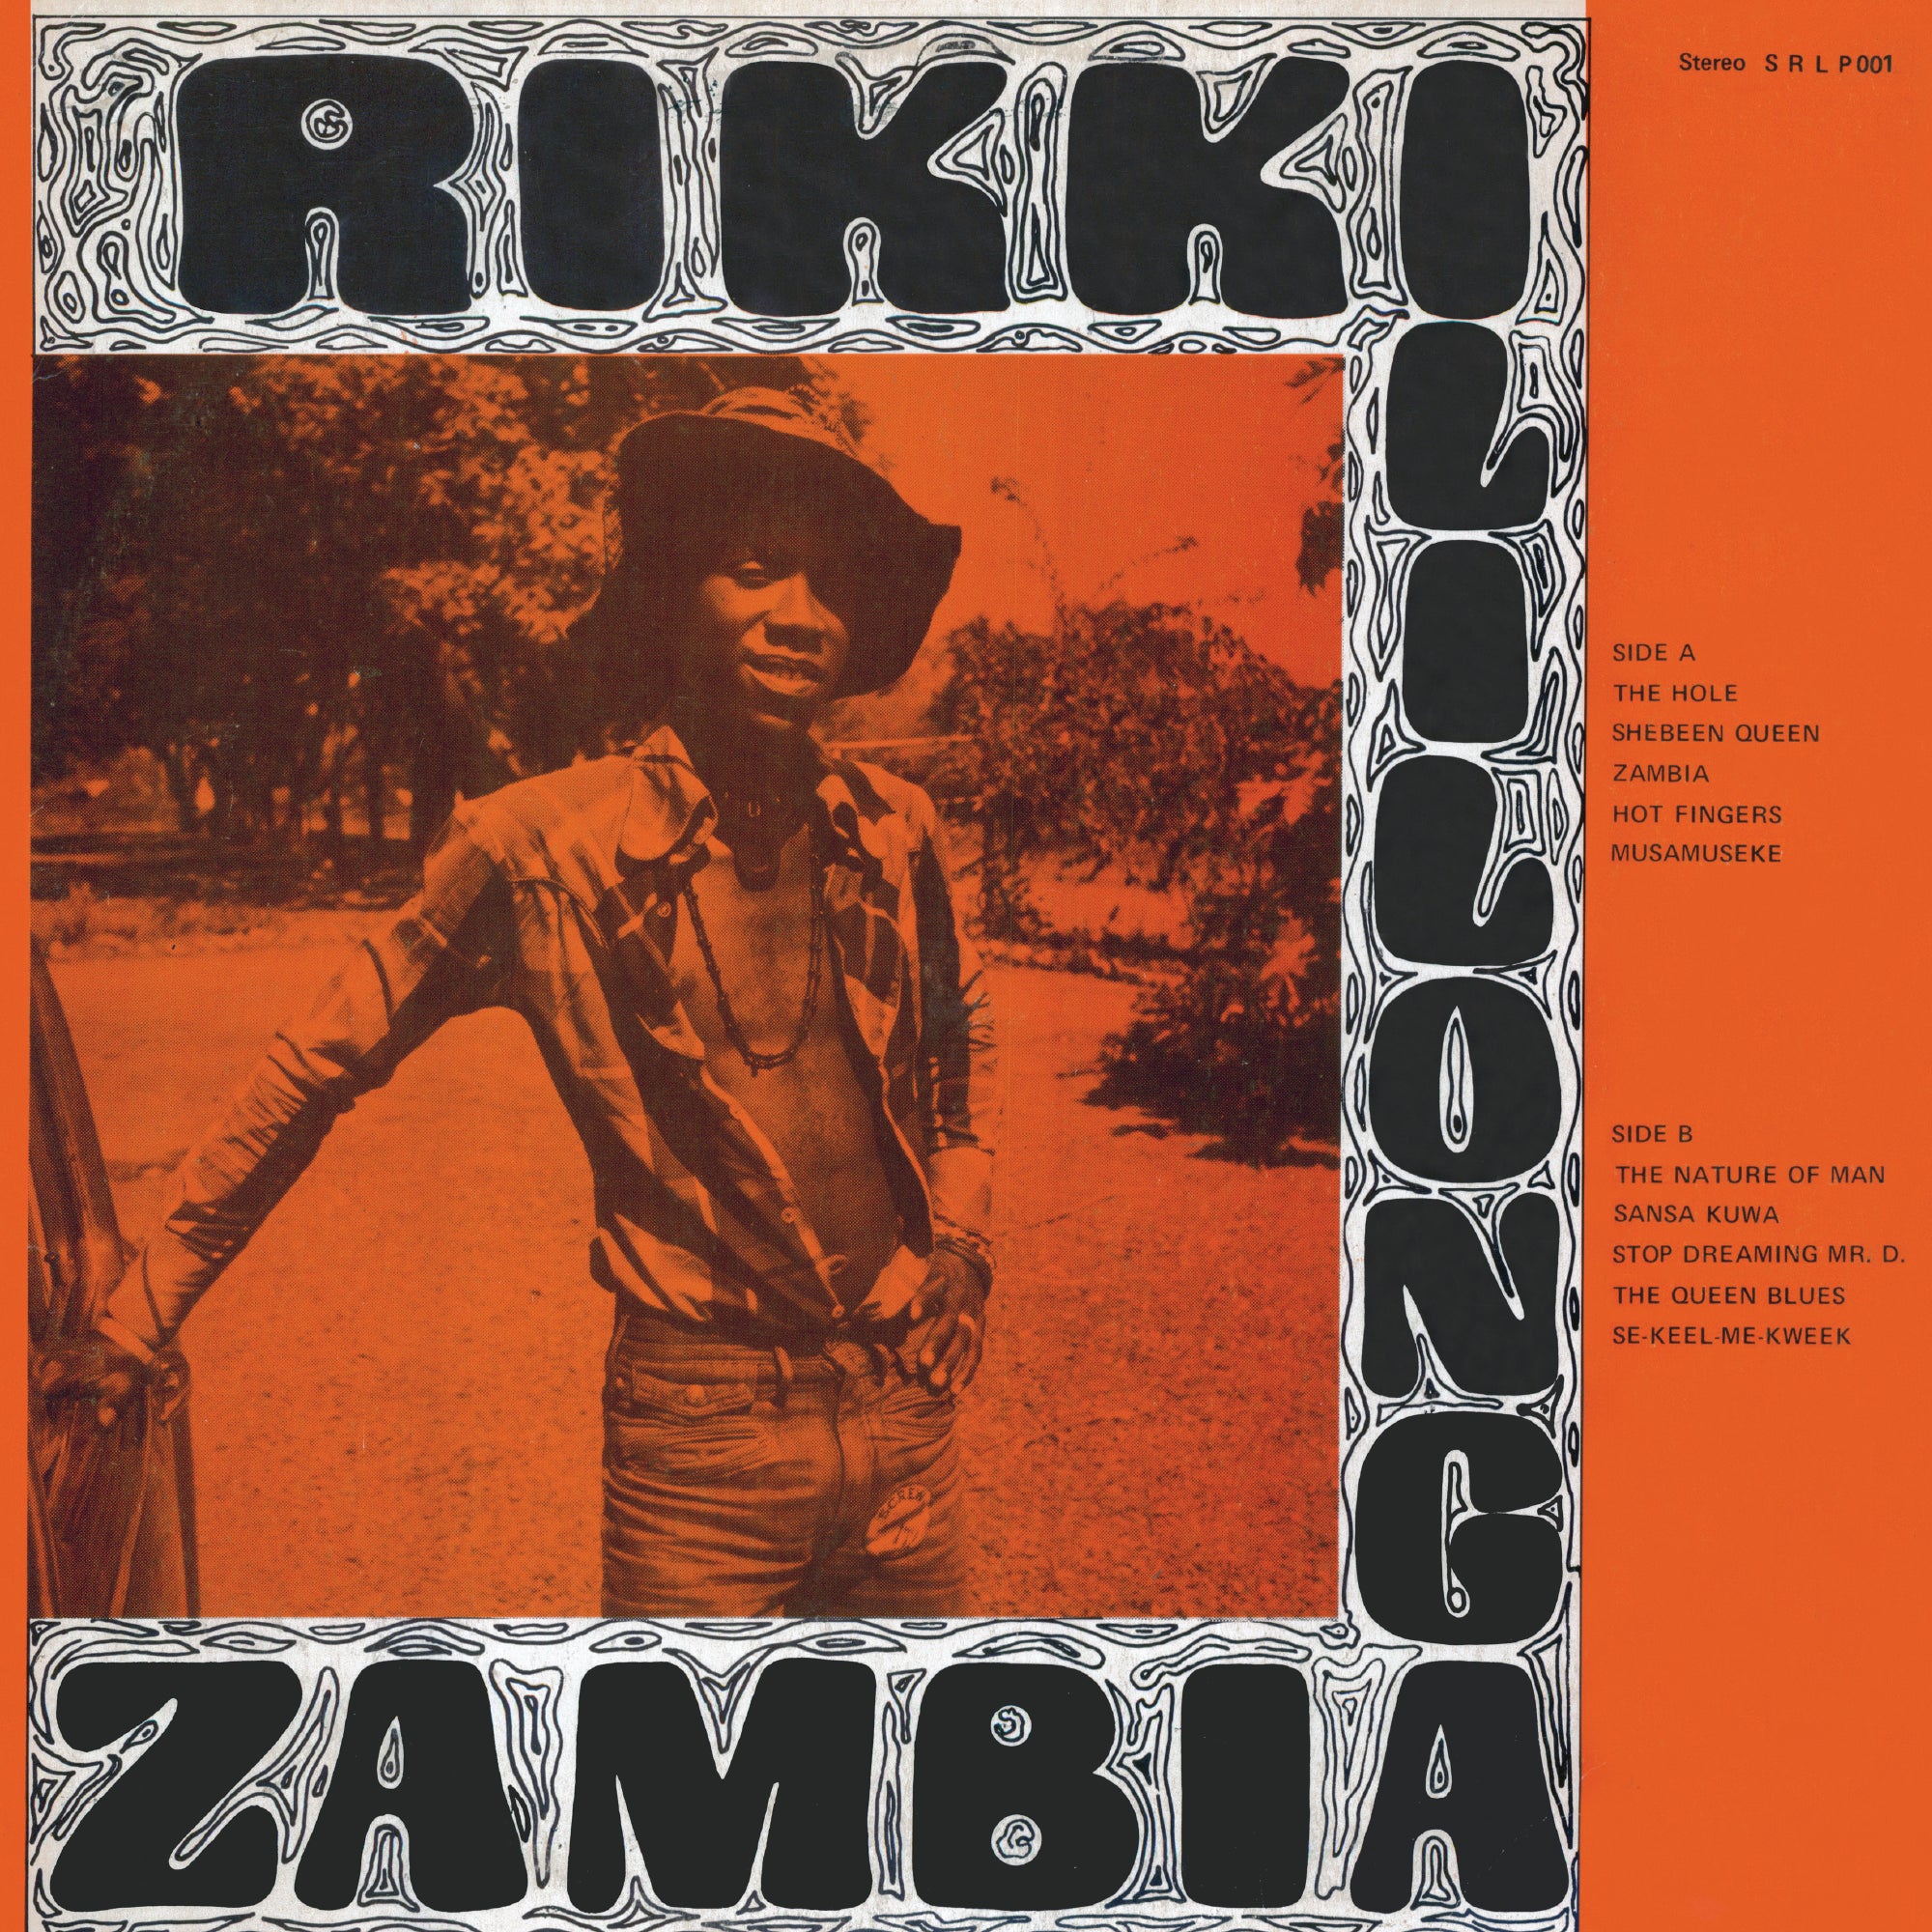 Rikki Ililonga – Zambia